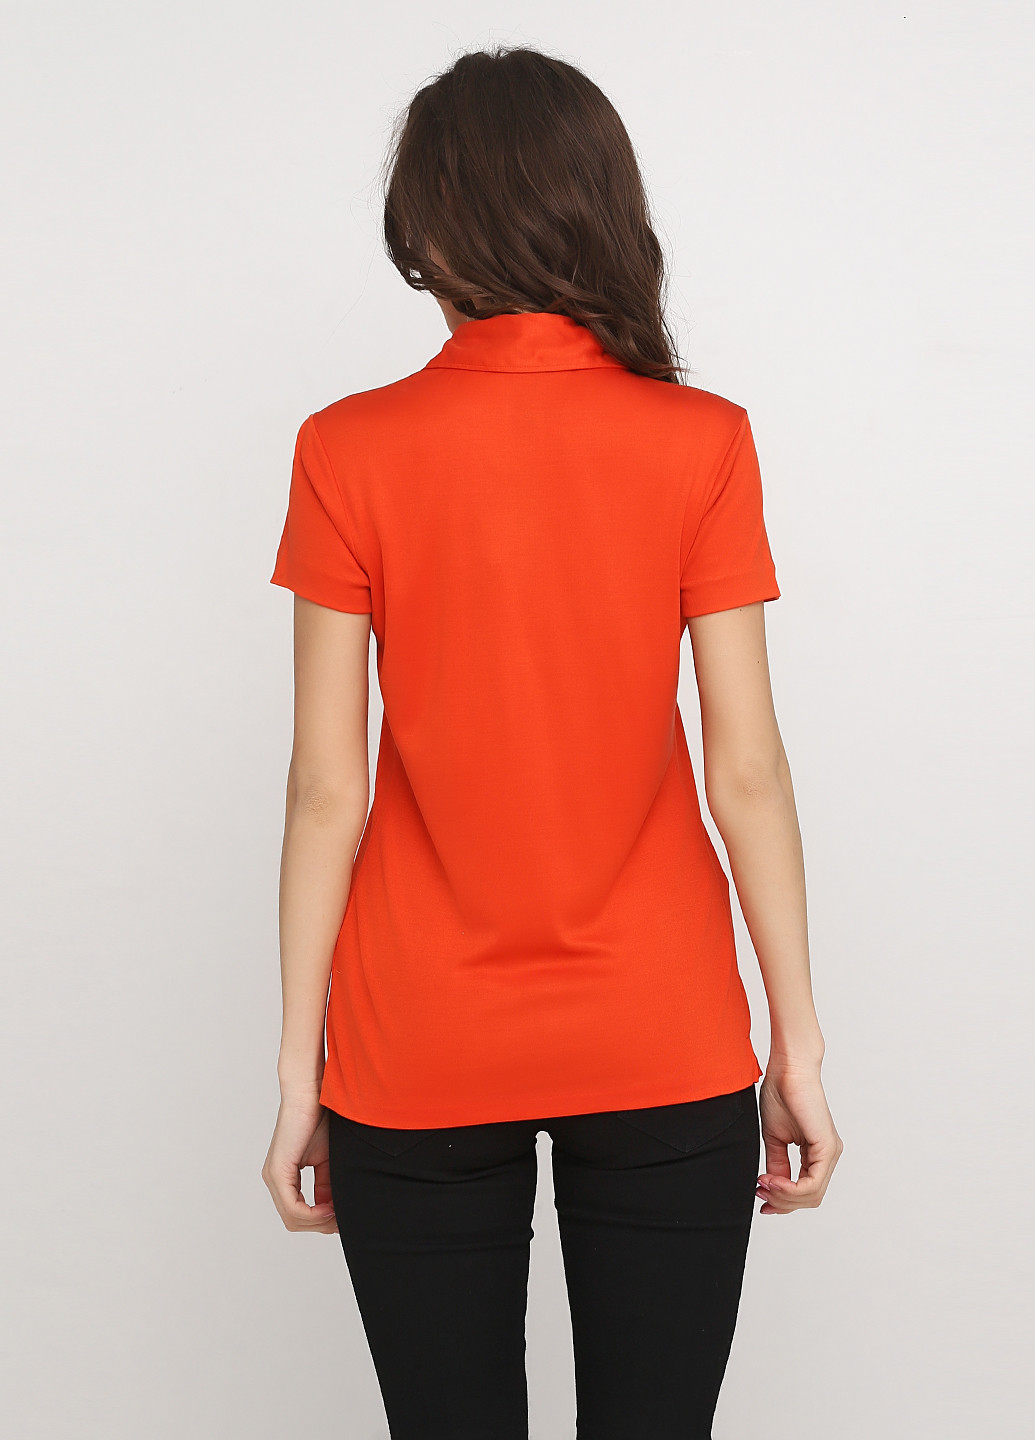 Оранжевая женская футболка-поло Ralph Lauren с логотипом